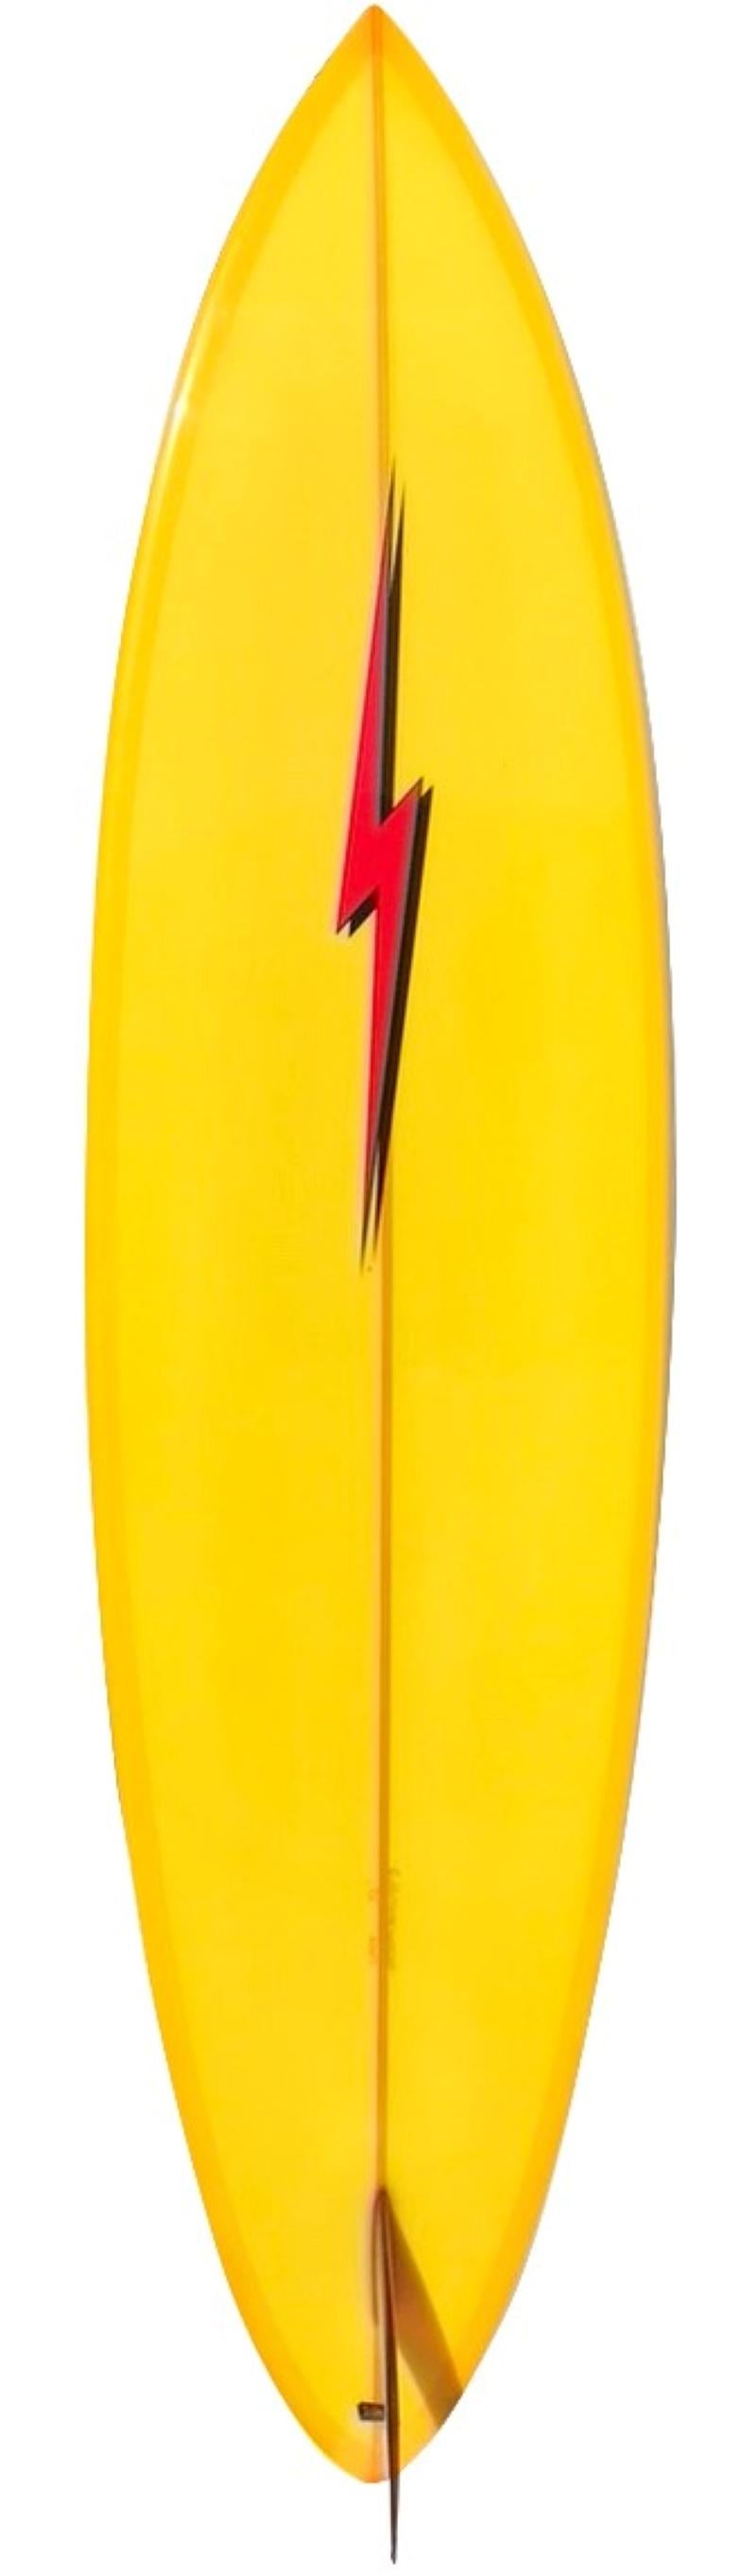 Planche de surf single fin lightning bolt de collection façonnée par Craig Hollingsworth. Forme arrondie avec double ligne d'épingle et aileron simple rouge en verre. Un bel exemple de shortboard classique Lightning Bolt des années 1970. 

En 1972::